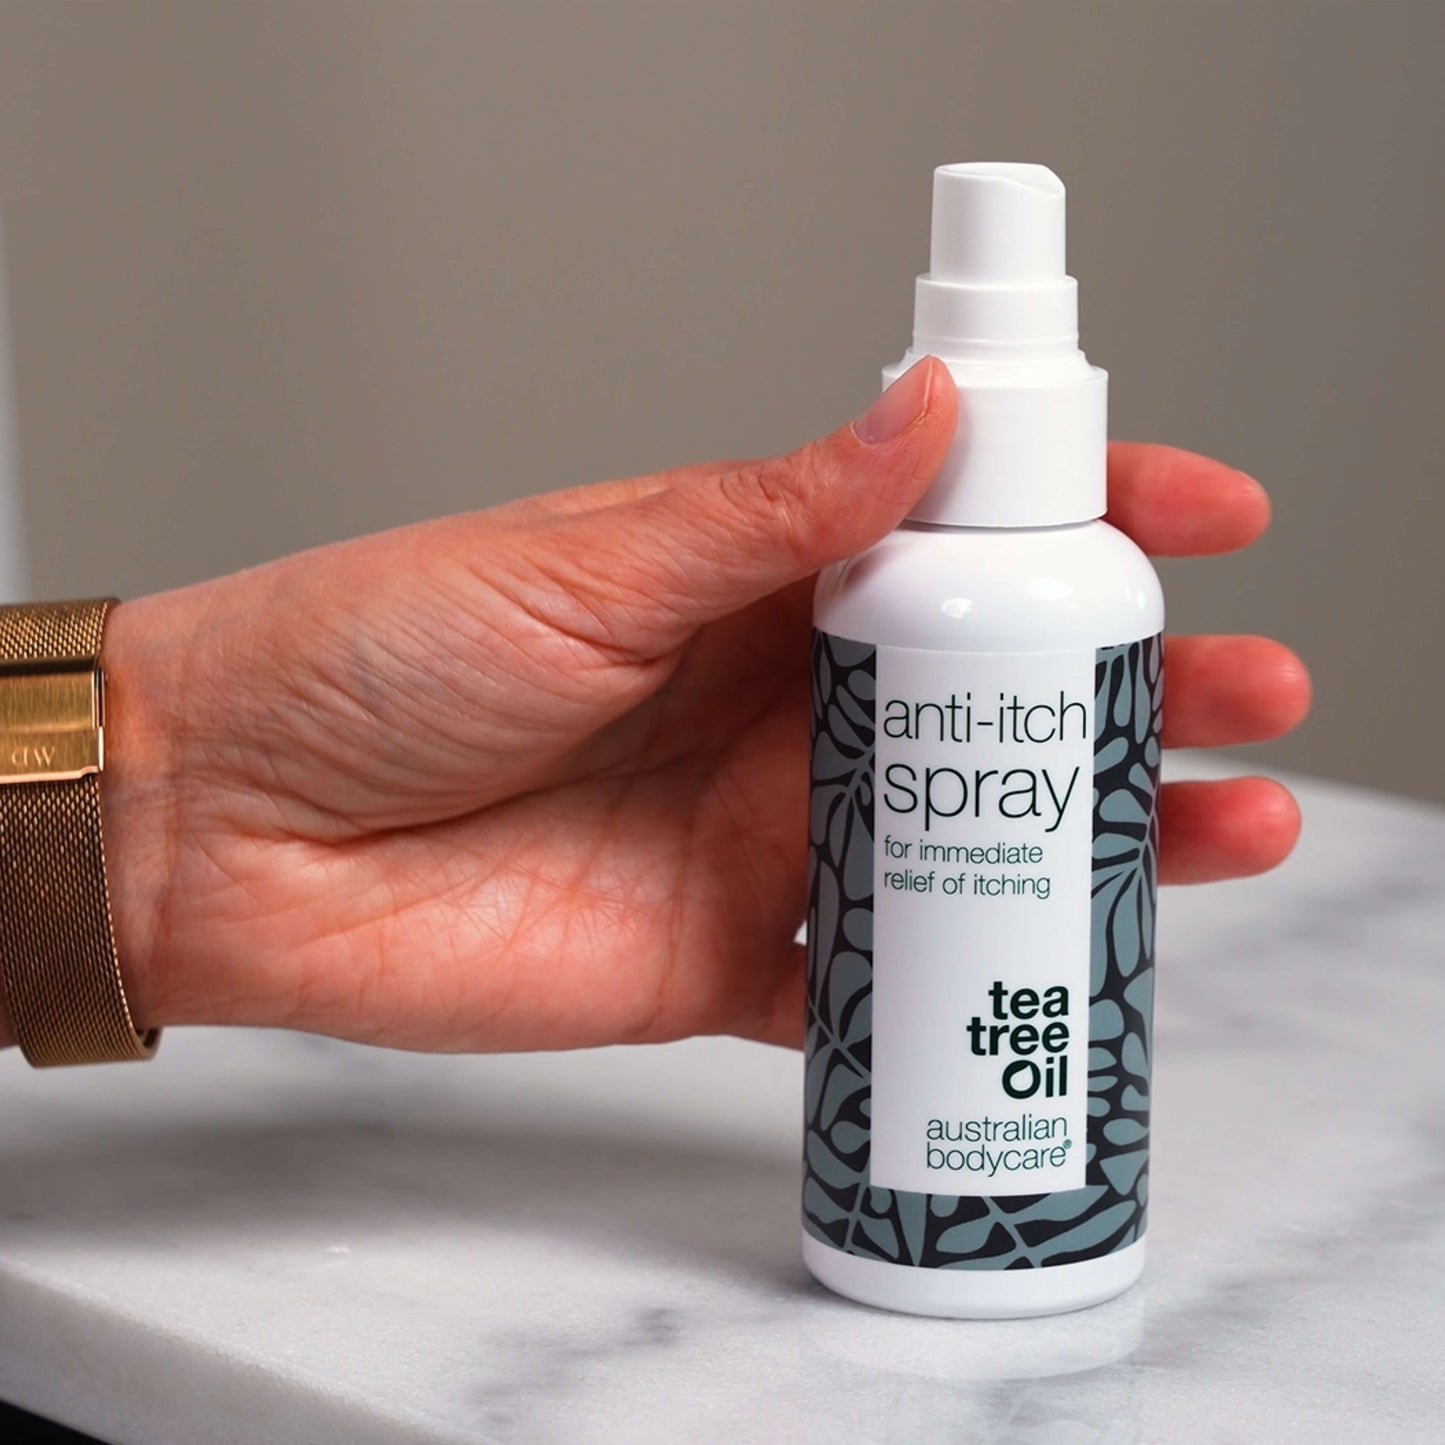 2 prodotti per rash cutaneo e irritazione - Kit per la cura quotidiana dell’irritazione cutanea sul corpo